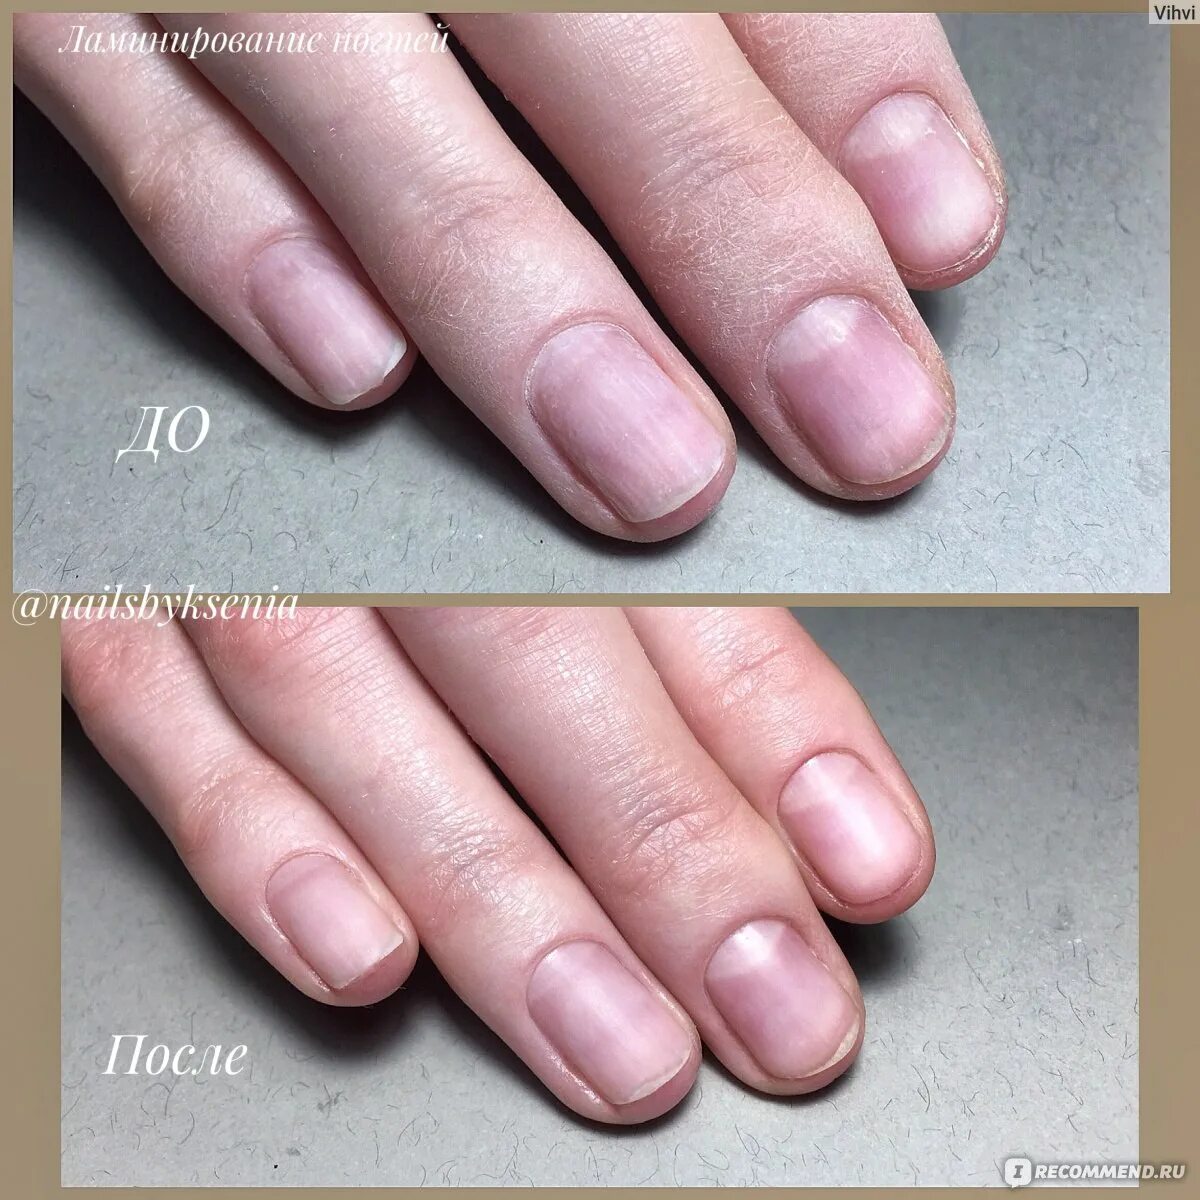 Ногти после геля отзывы. Ламинирование ногтей. Маникюр до и после. Восстановление ногтей до и после.